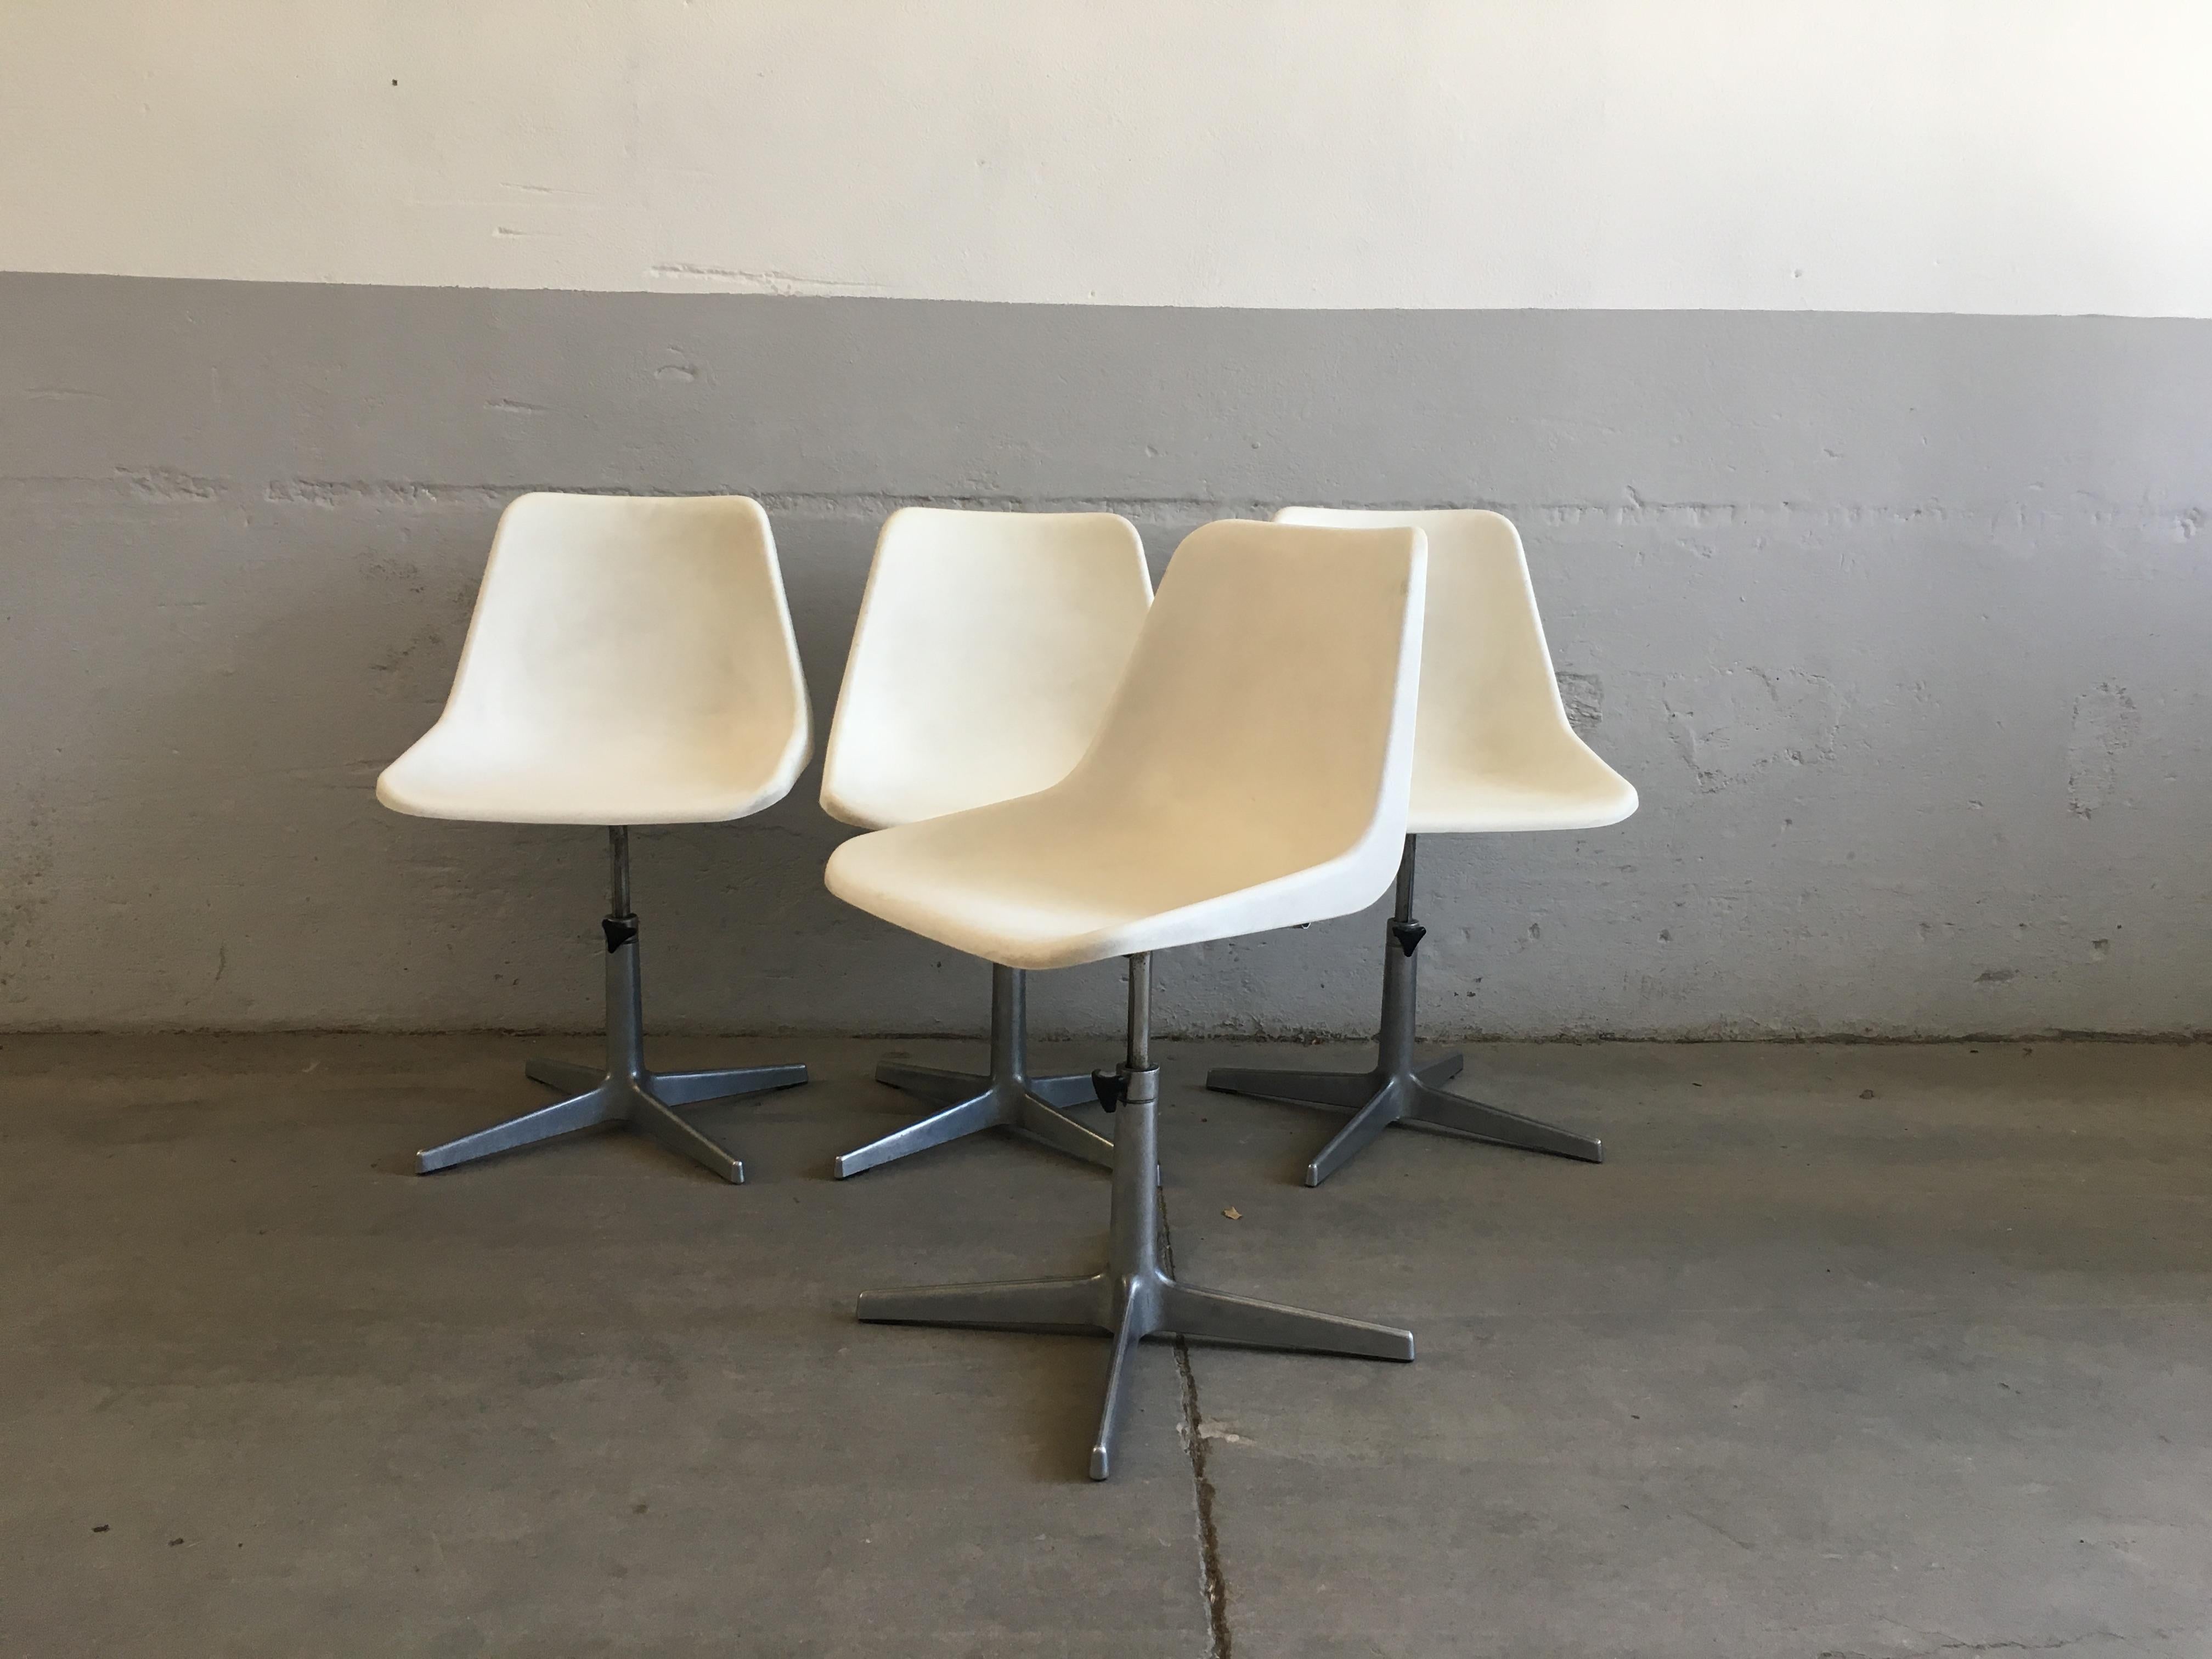 Modernes italienisches Set aus 4 drehbaren Stühlen aus Polypropylen und Chromstahl von Robin Day für S.A.M.U. Italien, 1960er Jahre.